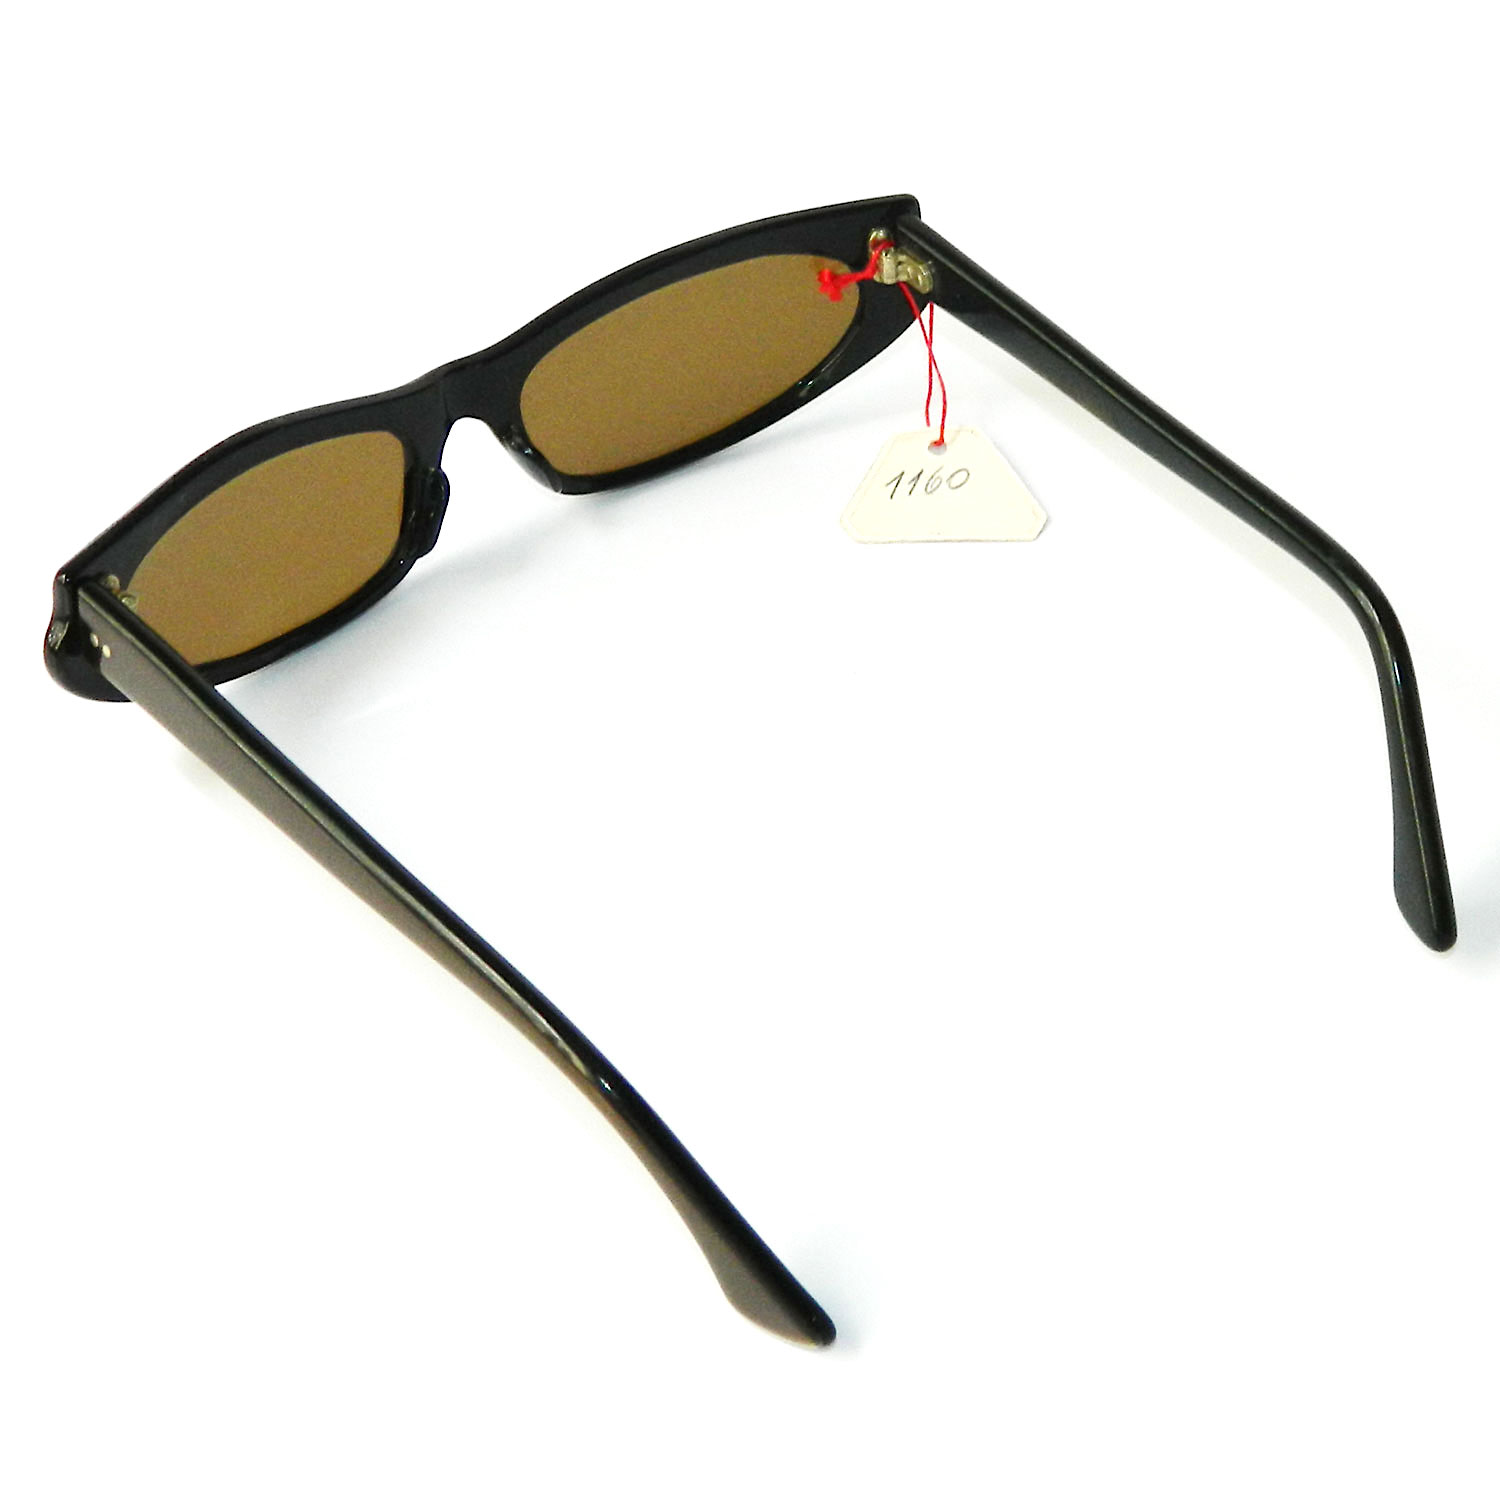 1960s Mod cat eye sunglasses